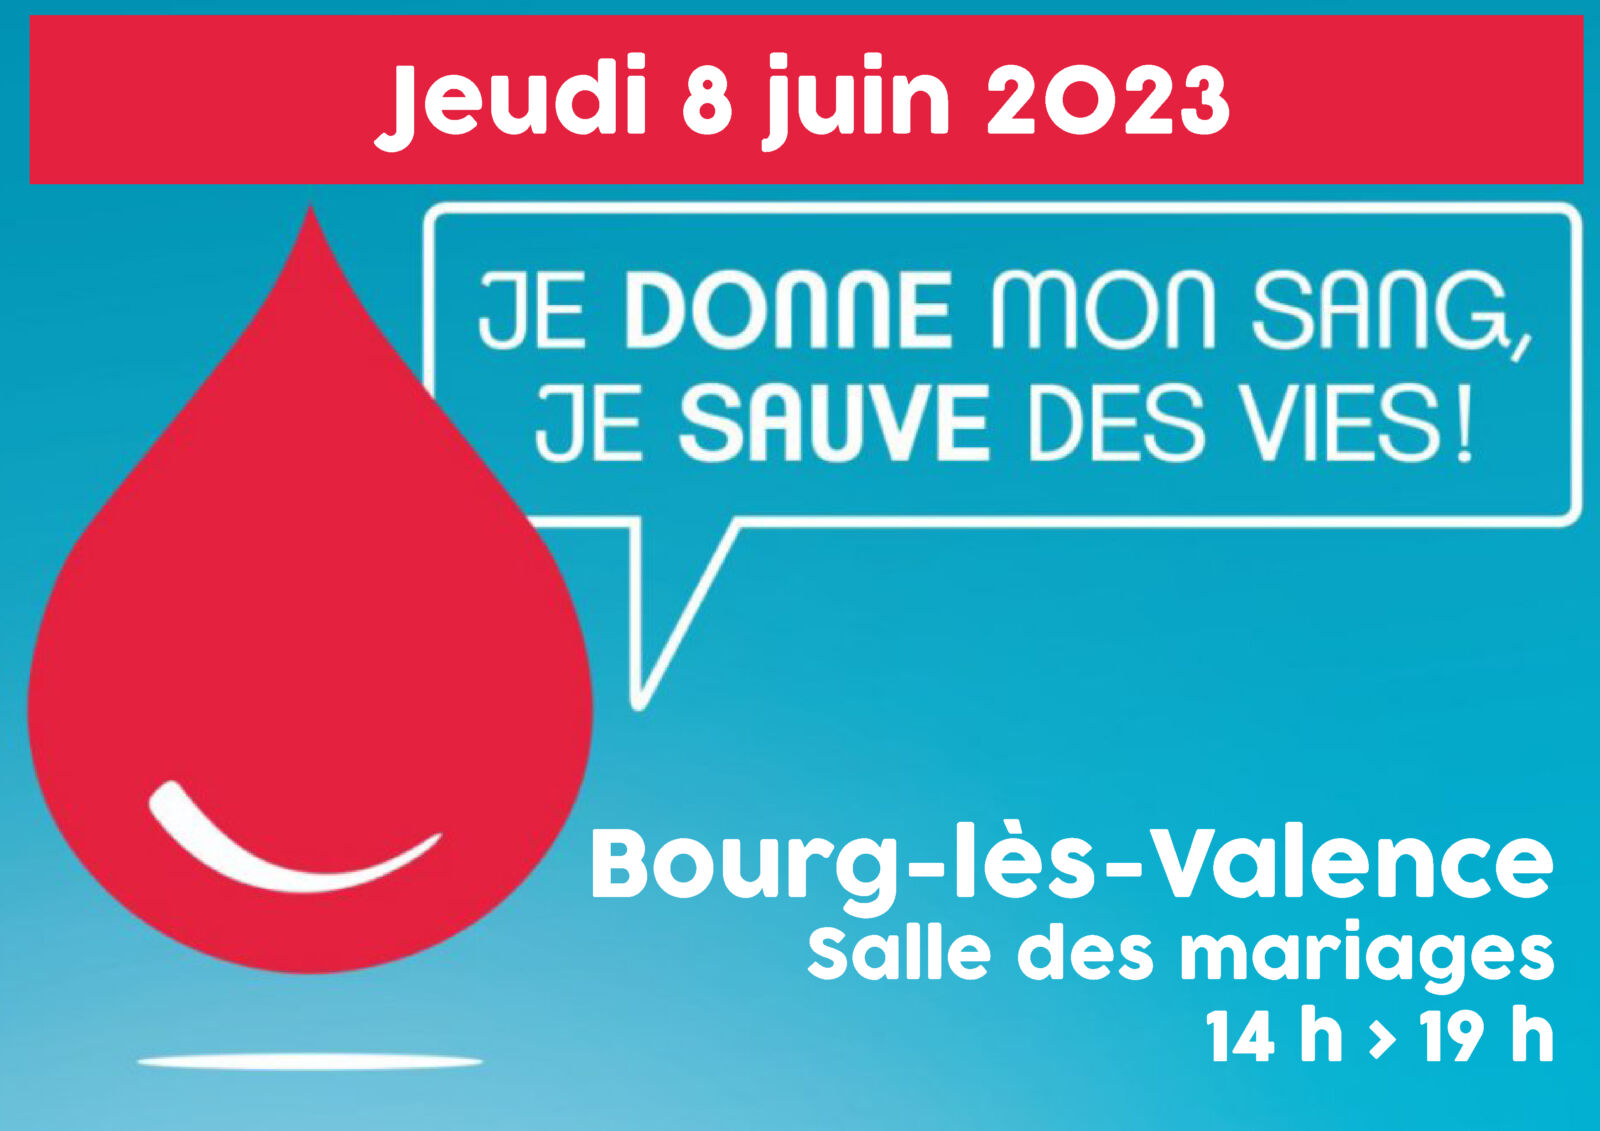 Sauvez des vies en participant à la collecte de don du sang le 8 juin 2023 !